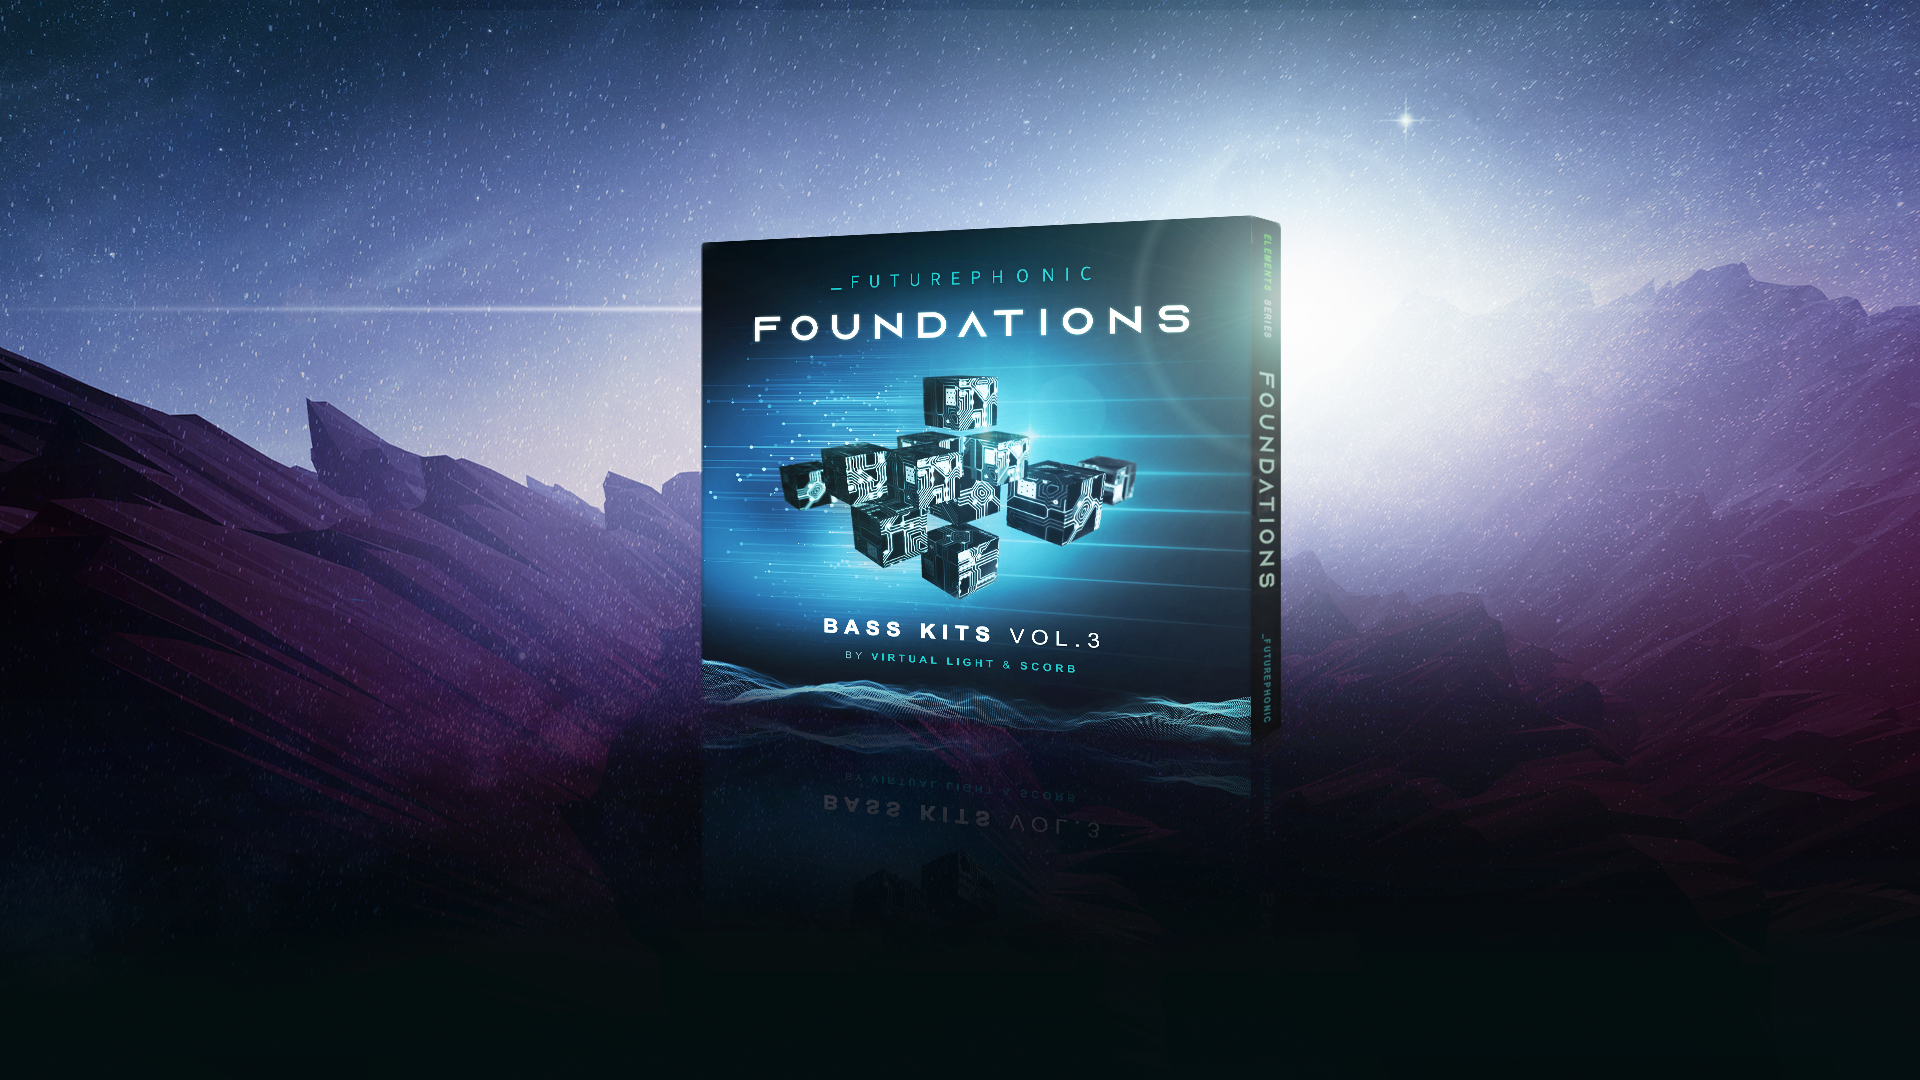 Foundations | Bass Kits Vol. 3 - Futurephonic